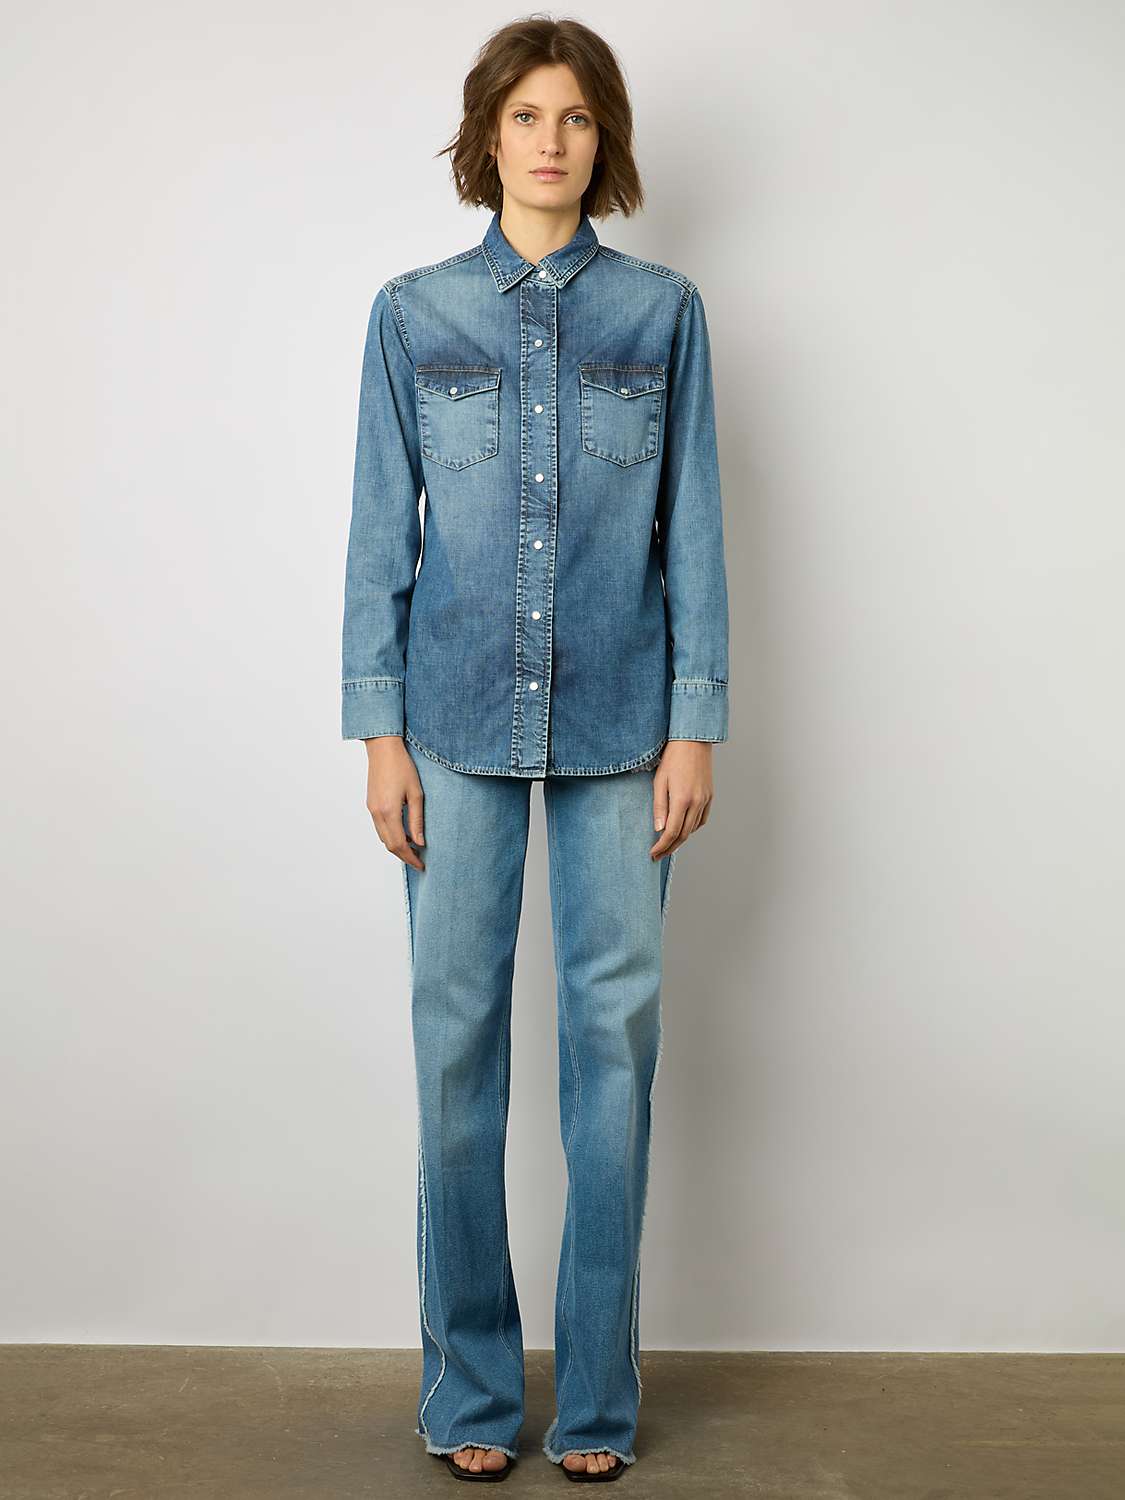 Buy Gerard Darel Aimee Denim Shirt, Blue Online at johnlewis.com